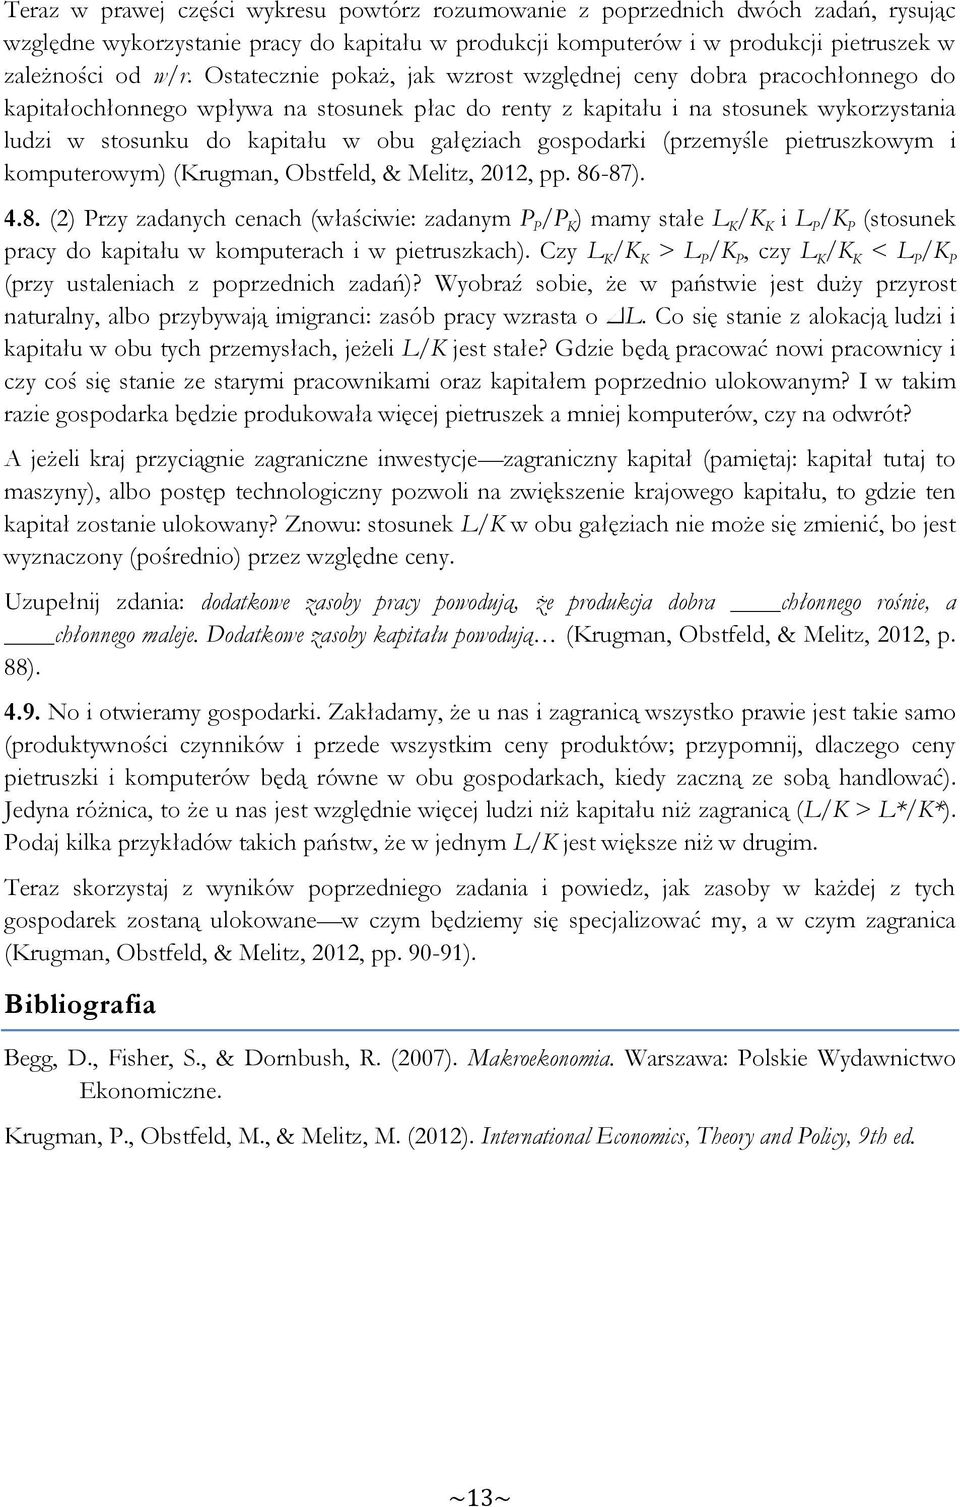 gałęziach gospodarki (przemyśle pietruszkowym i komputerowym) (Krugman, Obstfeld, & Melitz, 2012, pp. 86